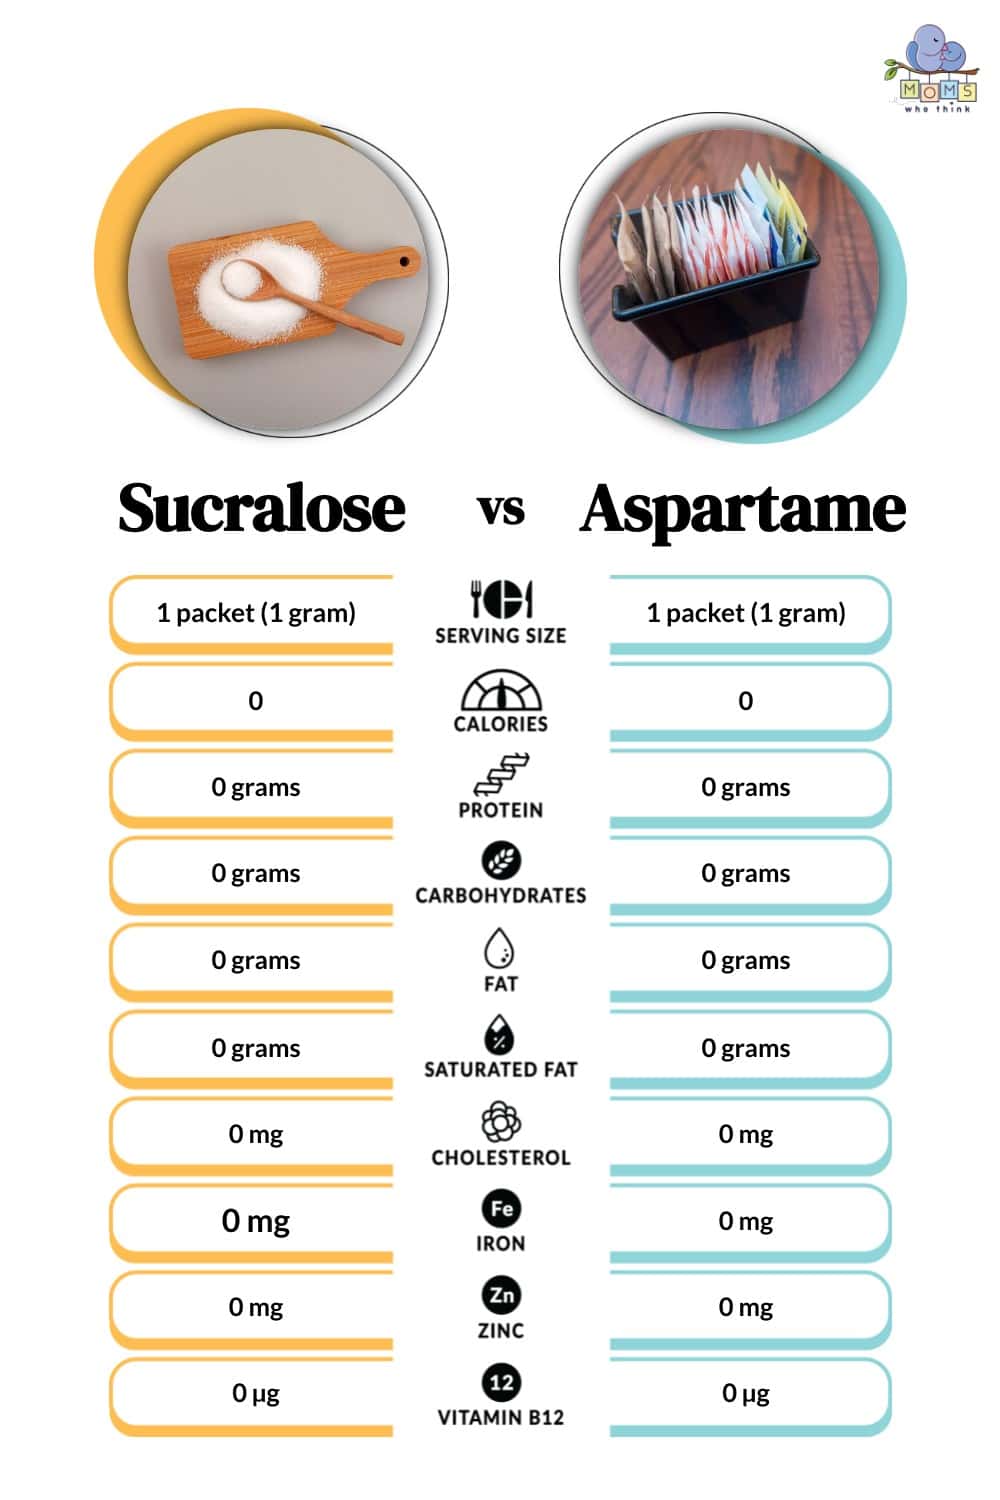 Sucralose vs Aspartame